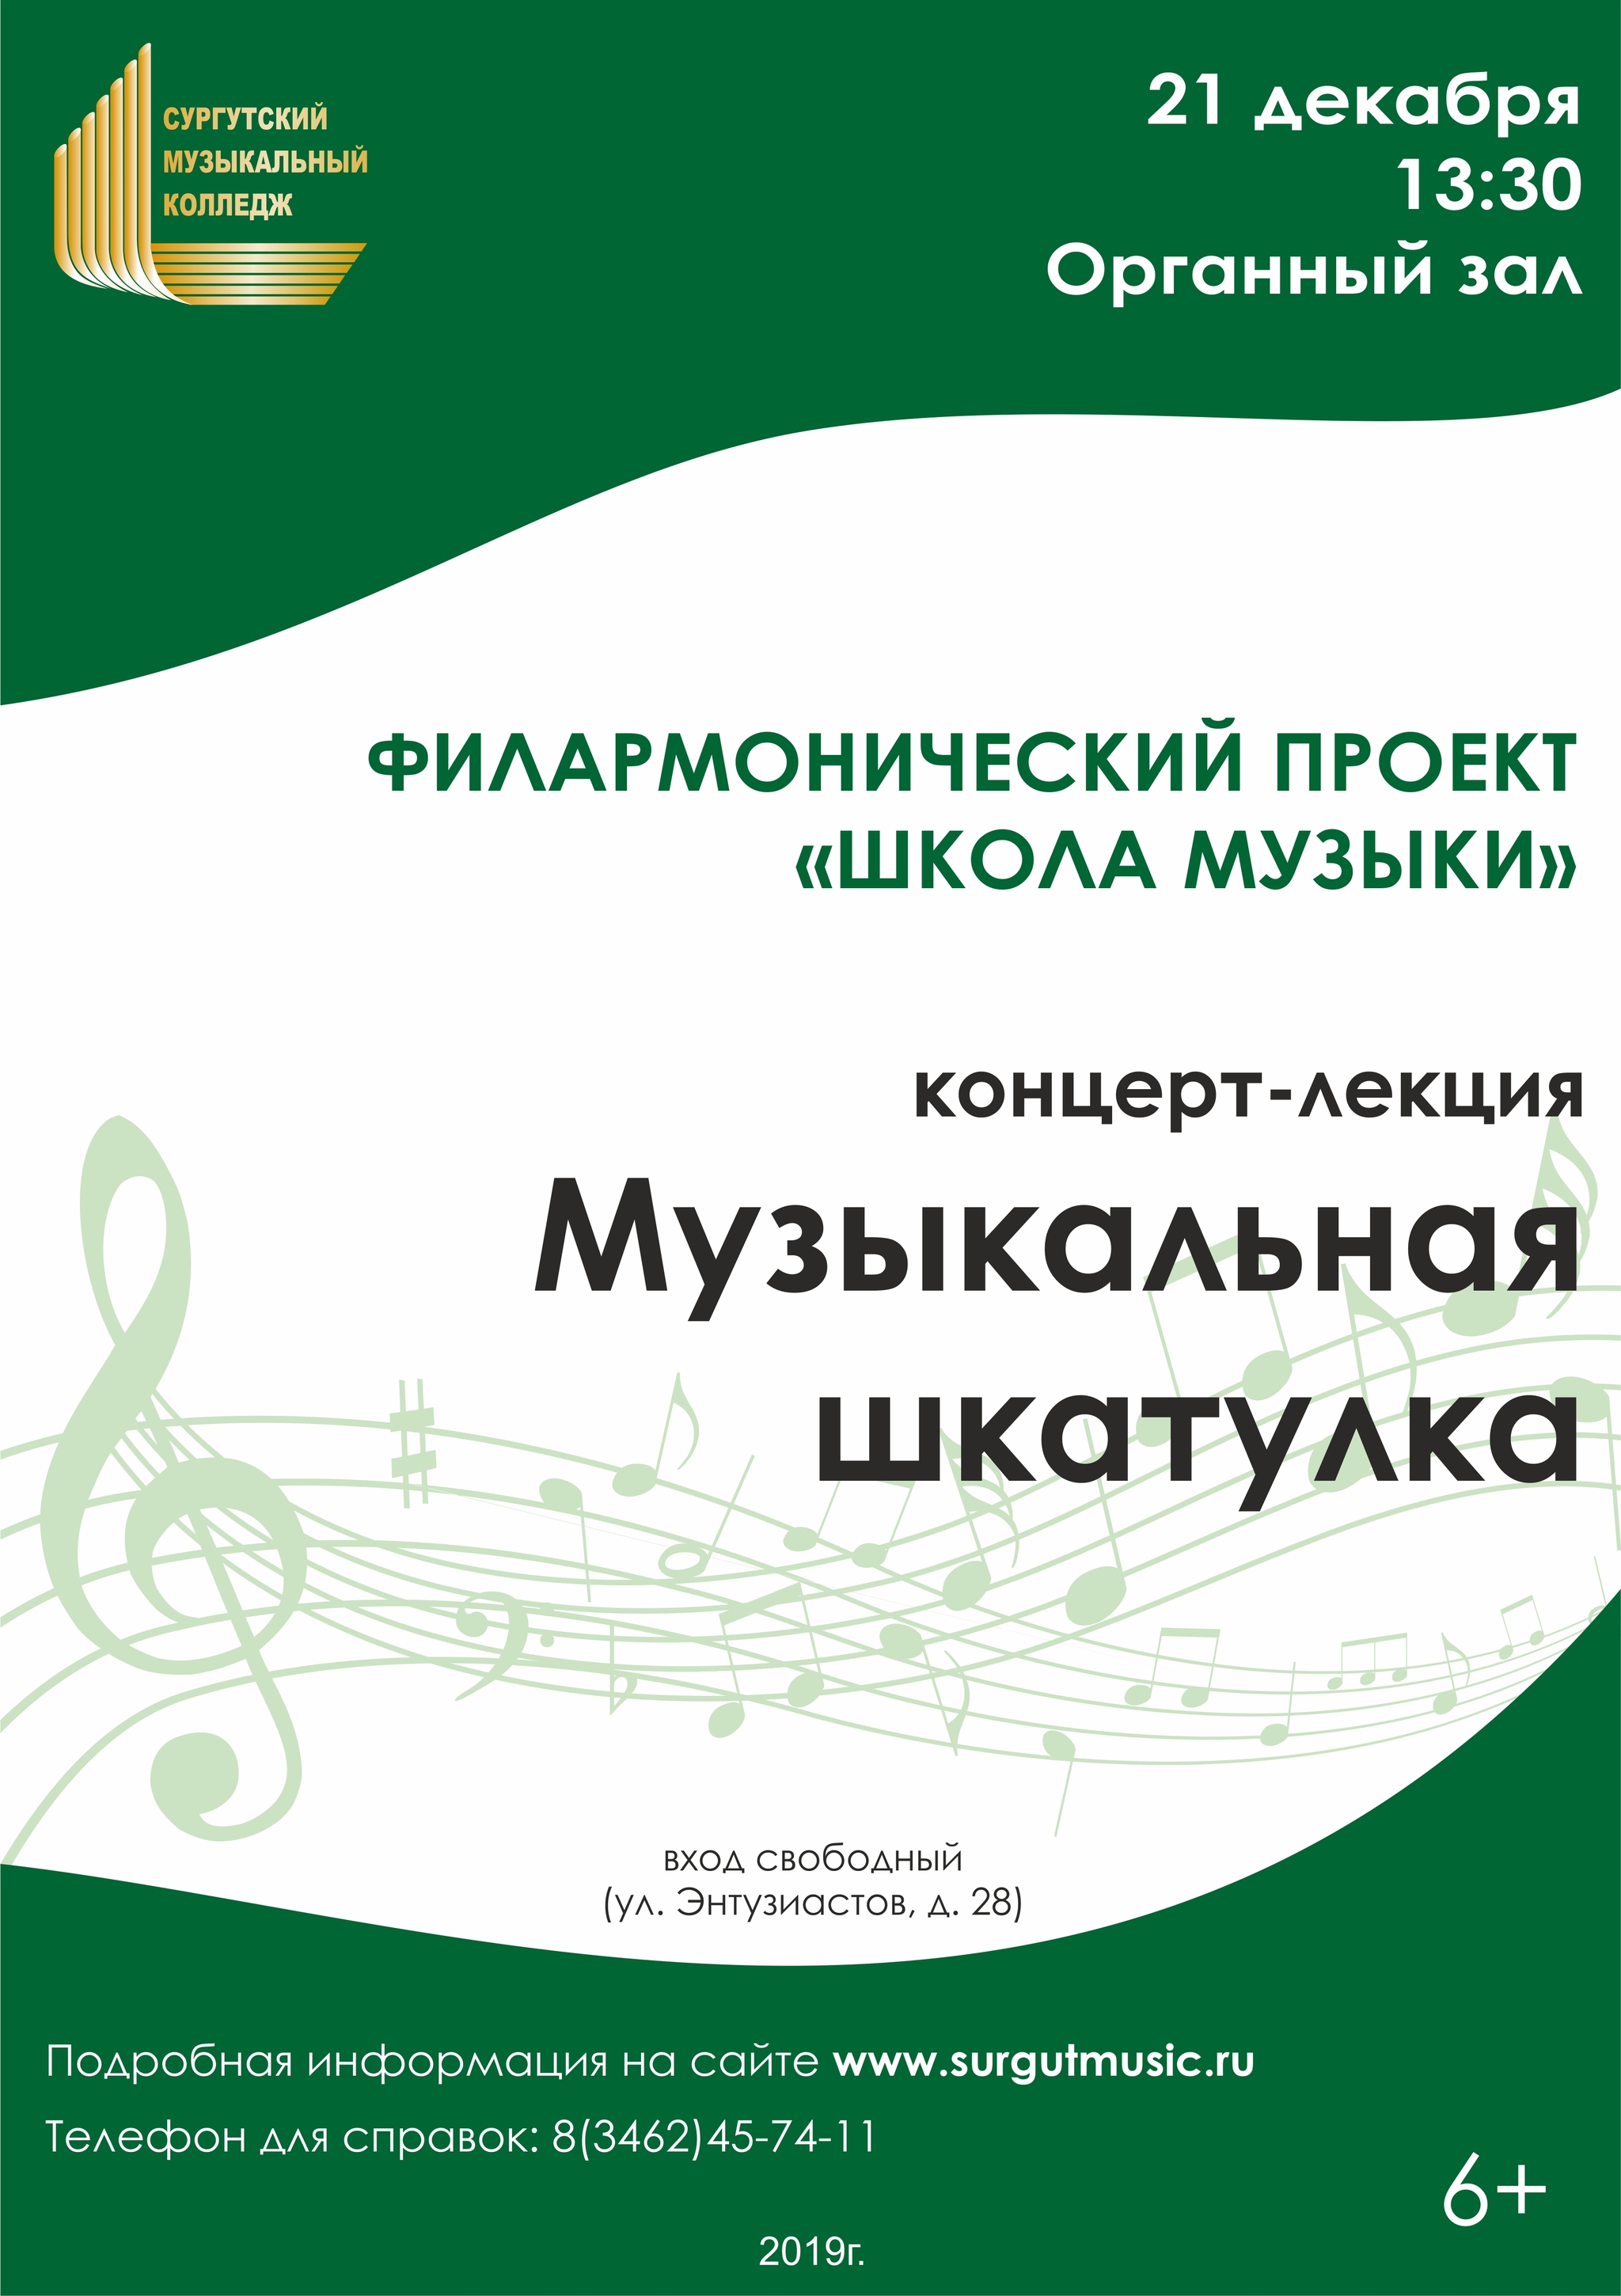 Жители Сургута увидят концерт-сказку «Музыкальная шкатулка» 